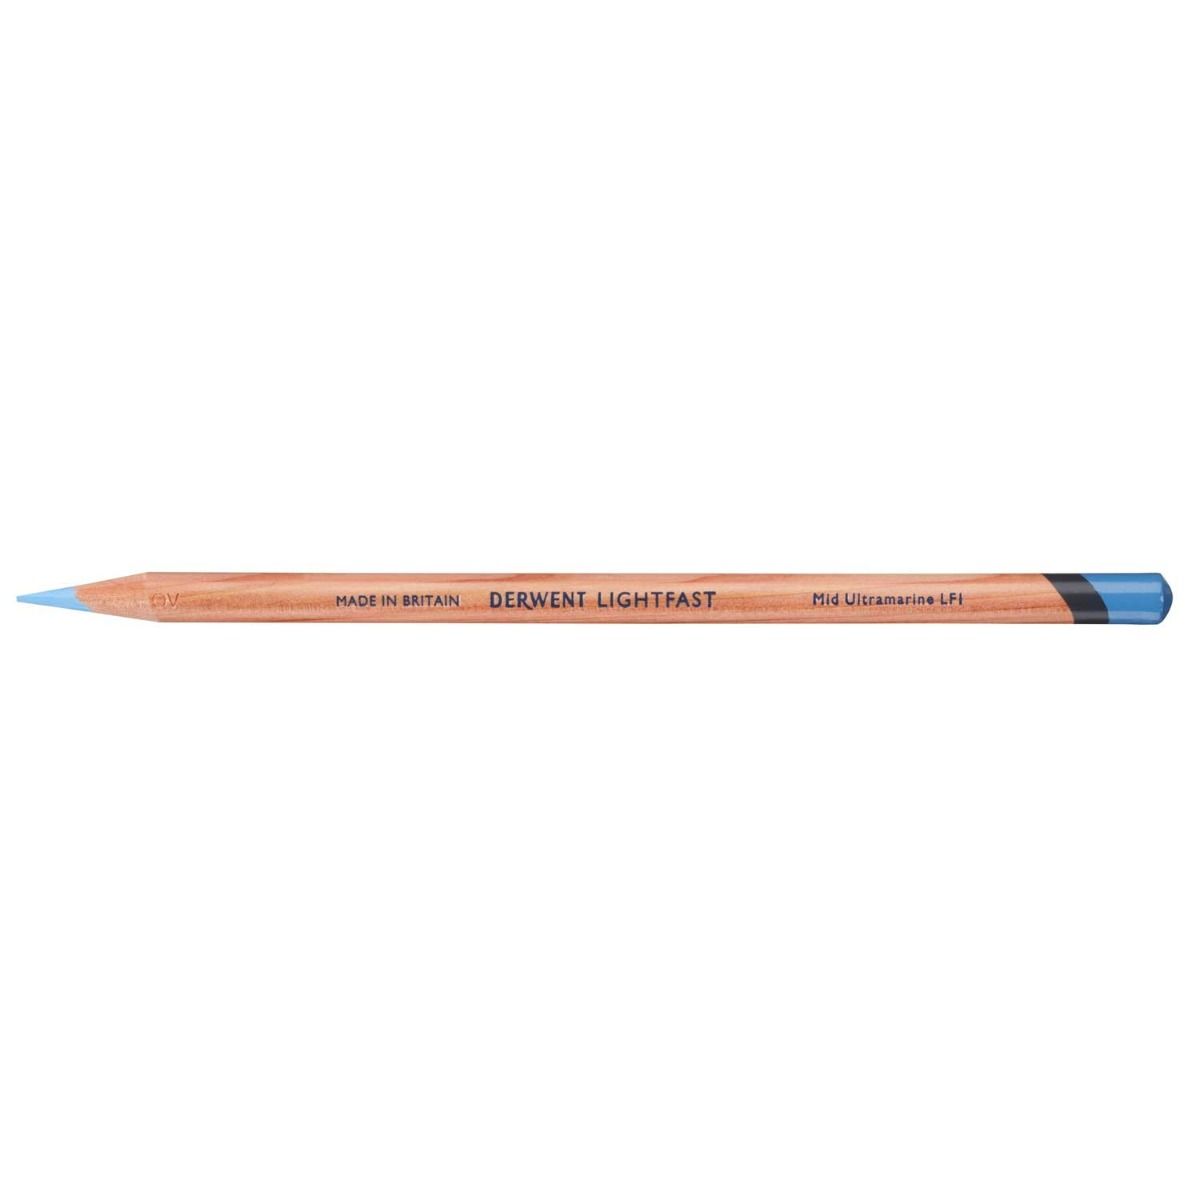 Derwent Lightfast Pencil Colour: Mid Ultramarine